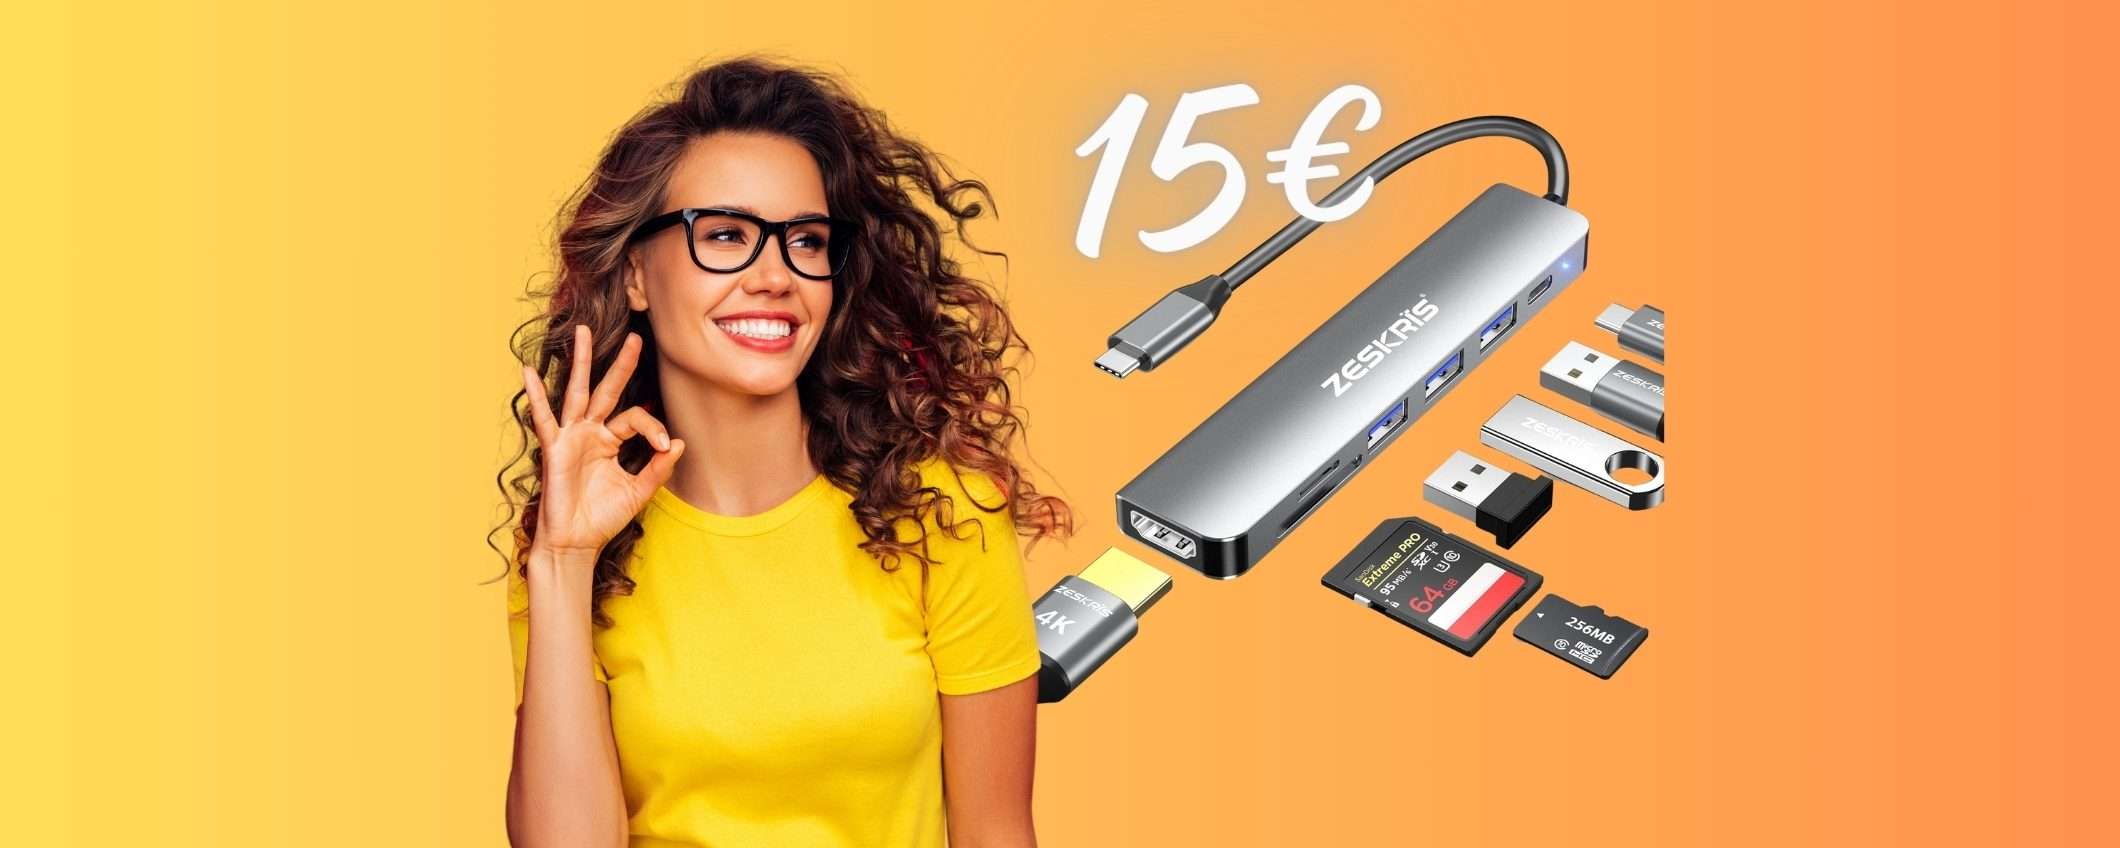 Hub USB 7 in 1 SPETTACOLO e il prezzo è a terra, ora è tuo a SOLI 15€